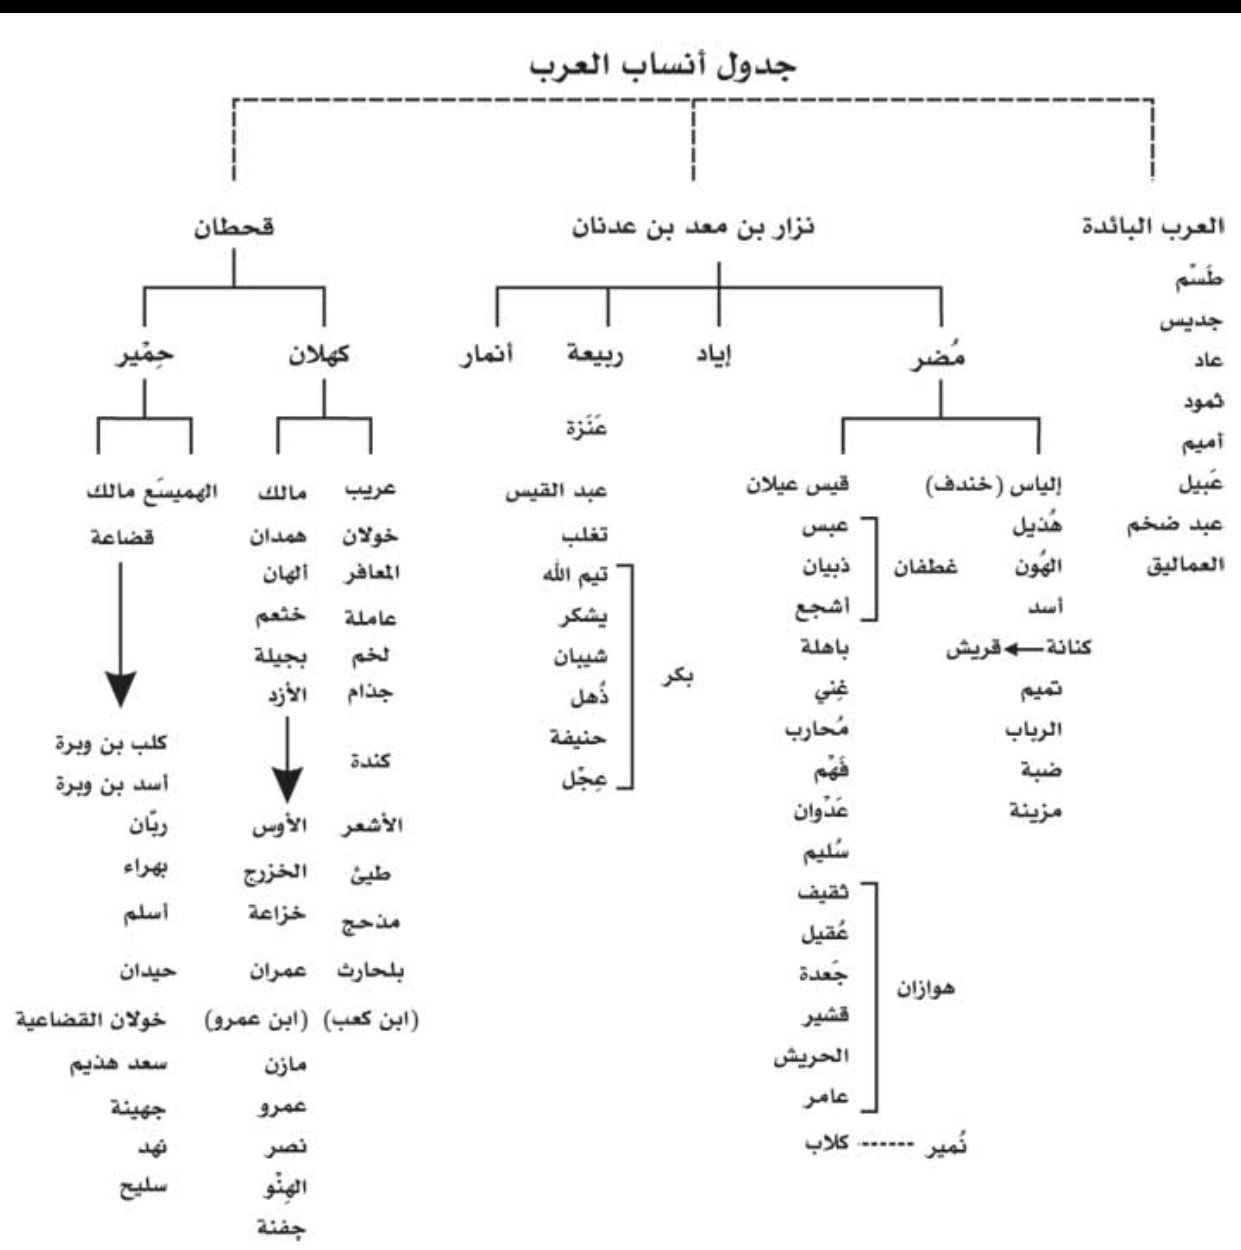 شجرة قبائل العرب